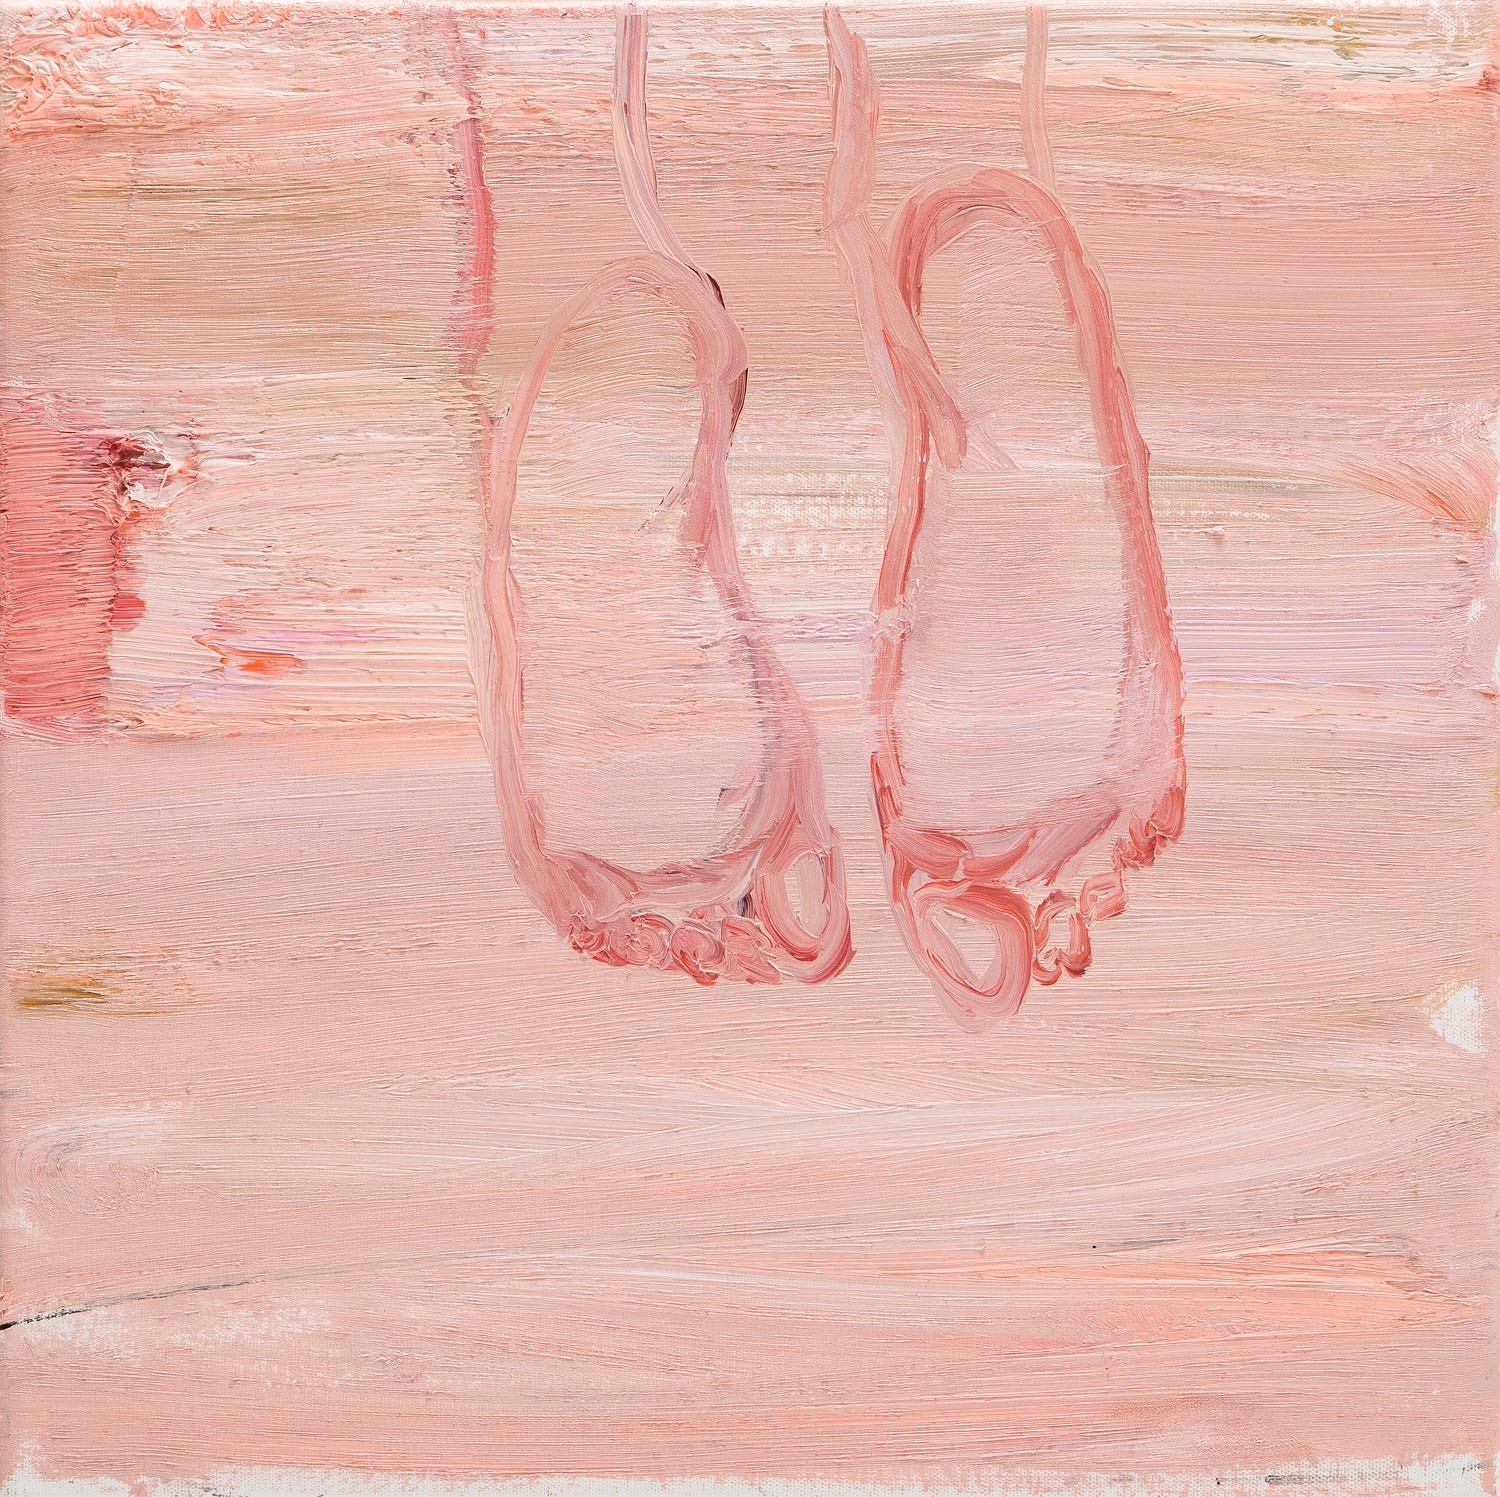 "Feet" by Michał Zaborowski, 2018